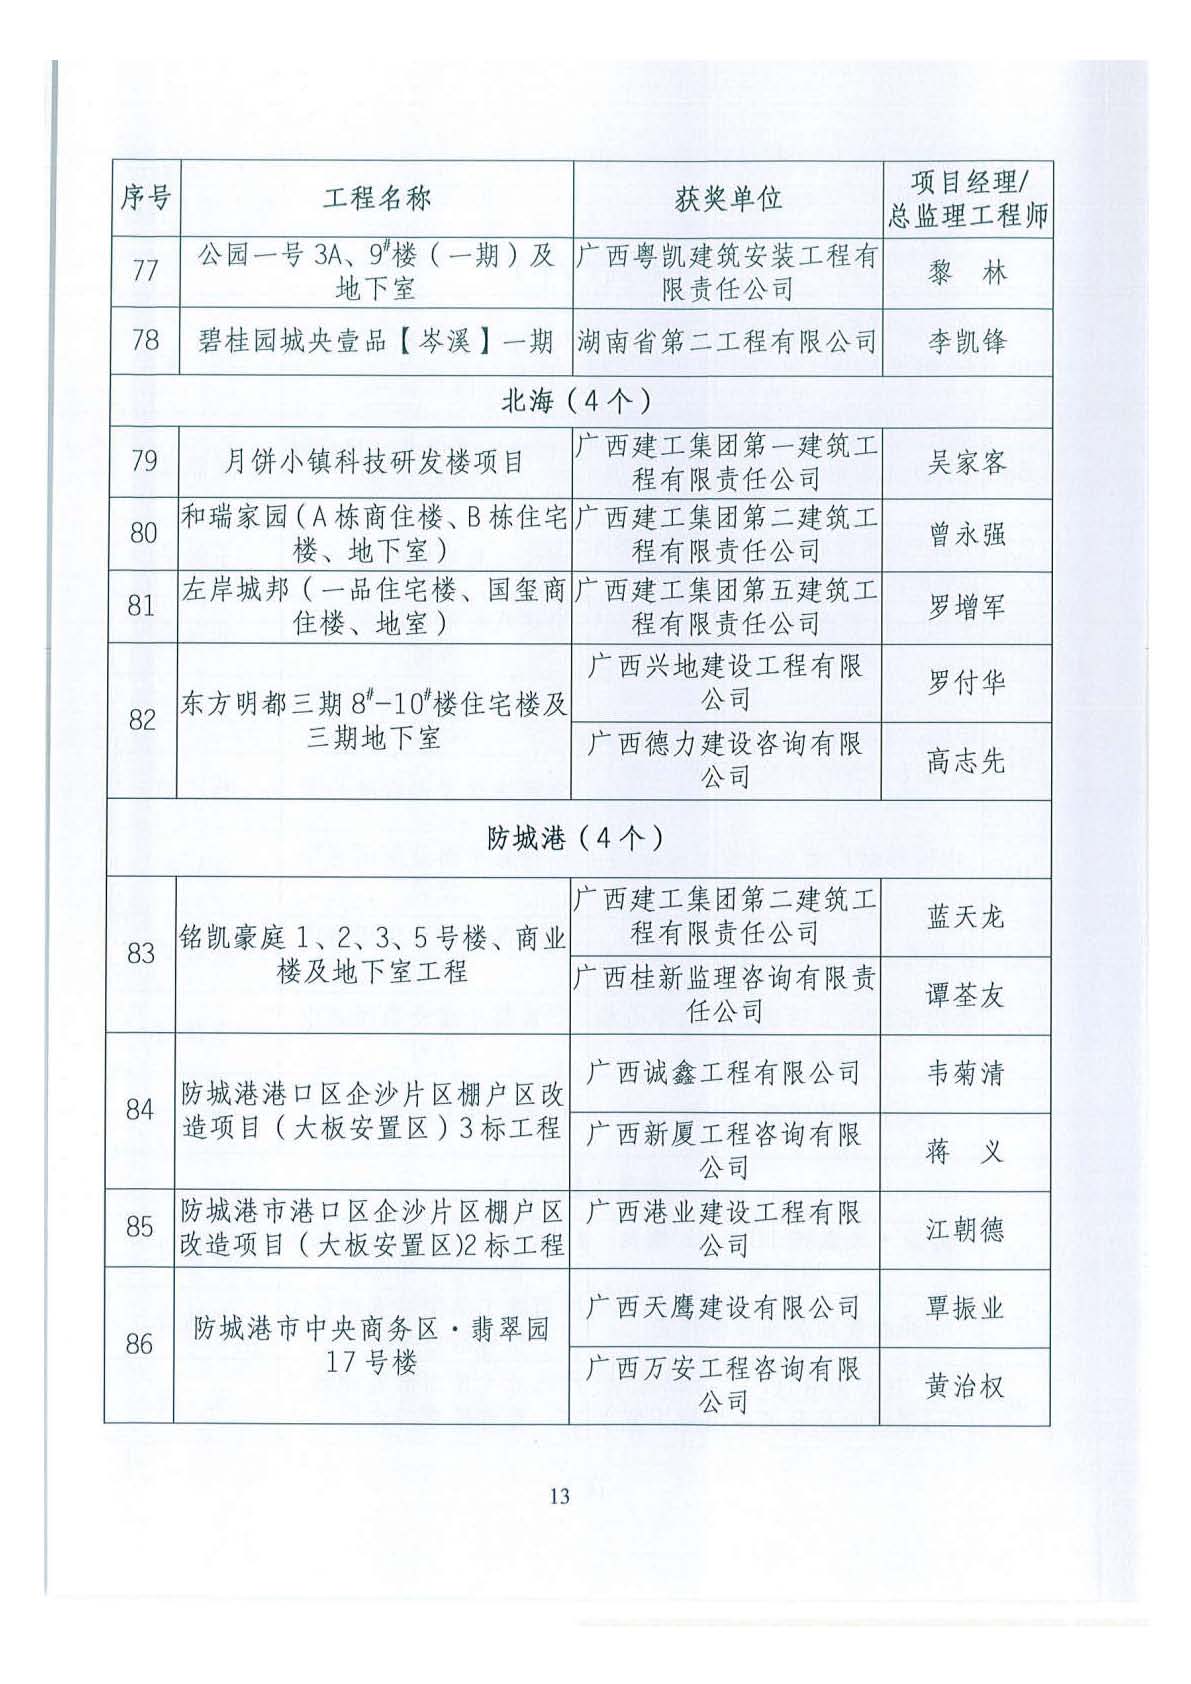 关于公布2018年下半年广西壮族自治区建设工程施工安全文明标准化工地的通知 _页面_13.jpg